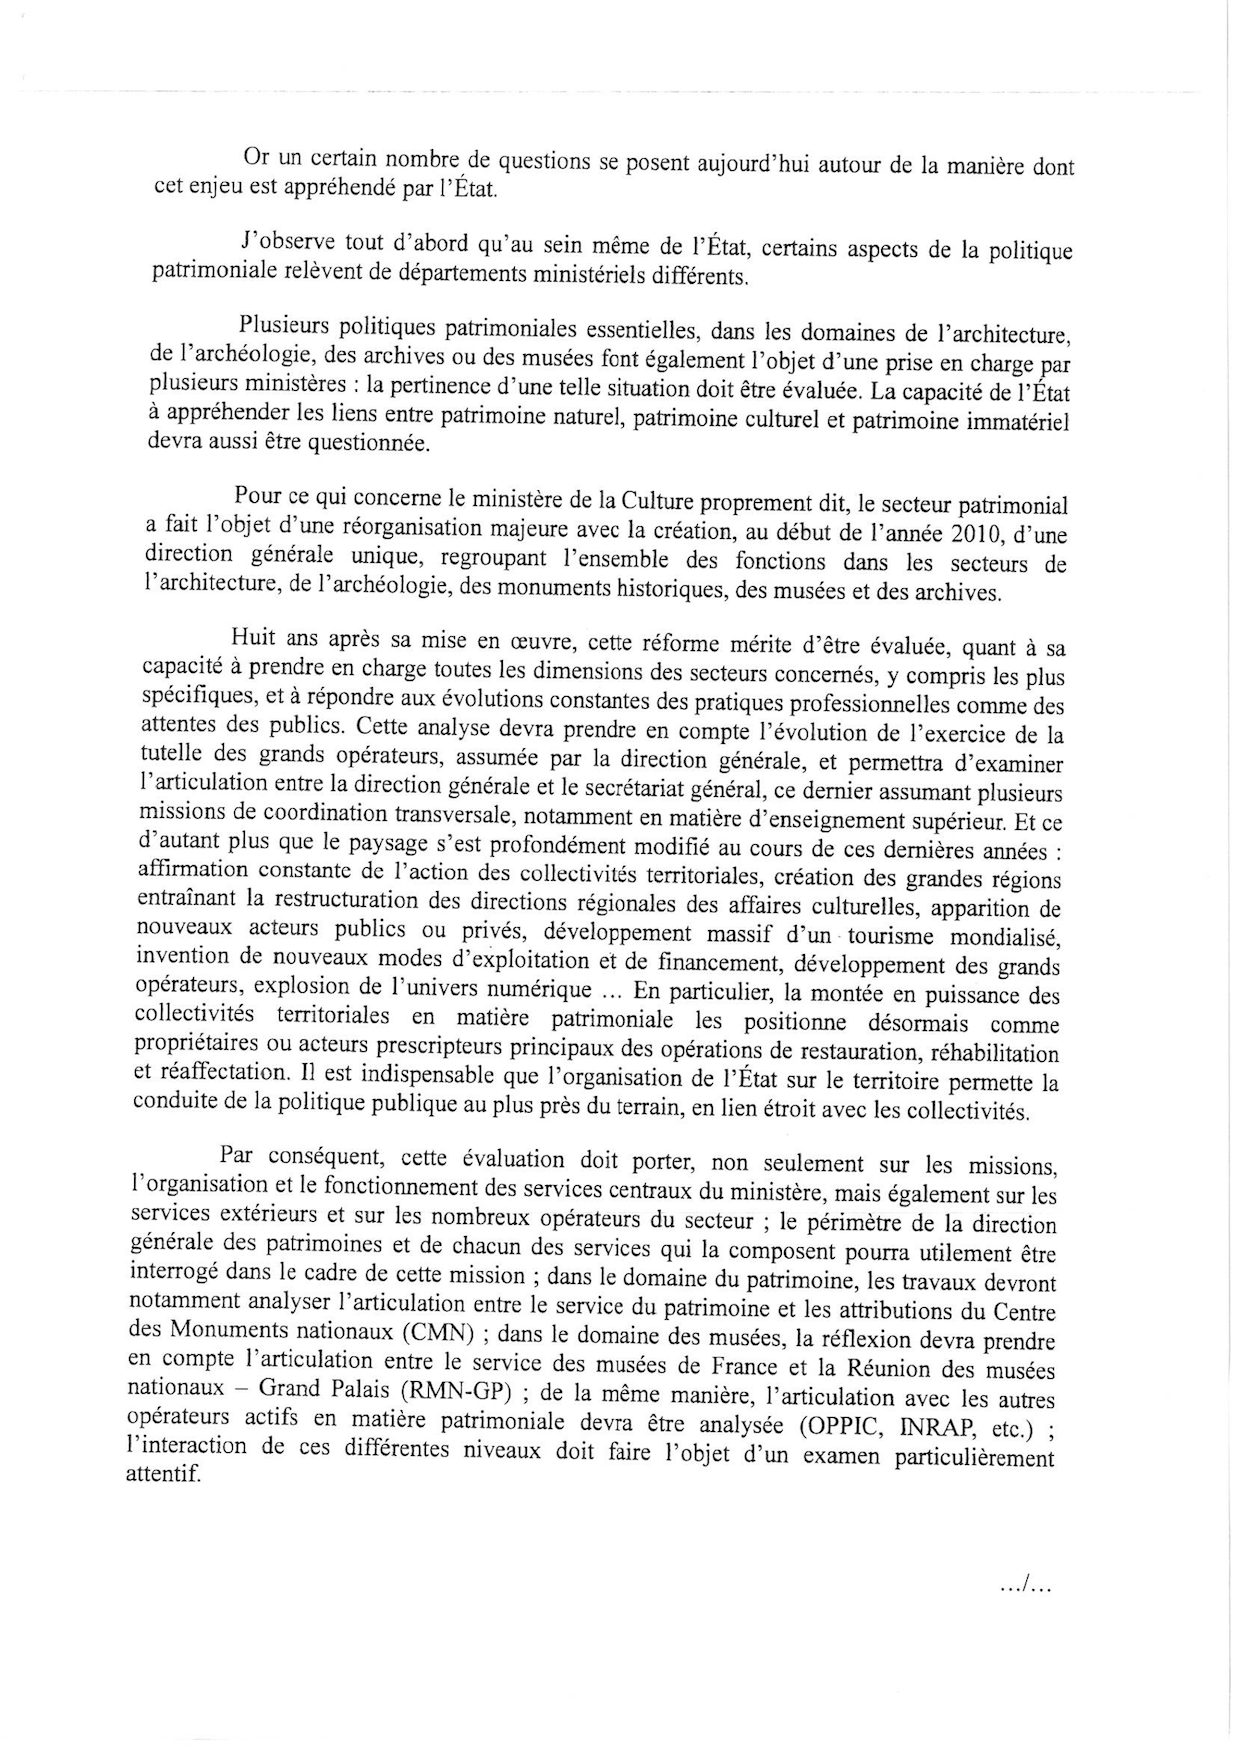 Lettre de mission adressée par Françoise Nyssen à Philippe Bélaval page 2